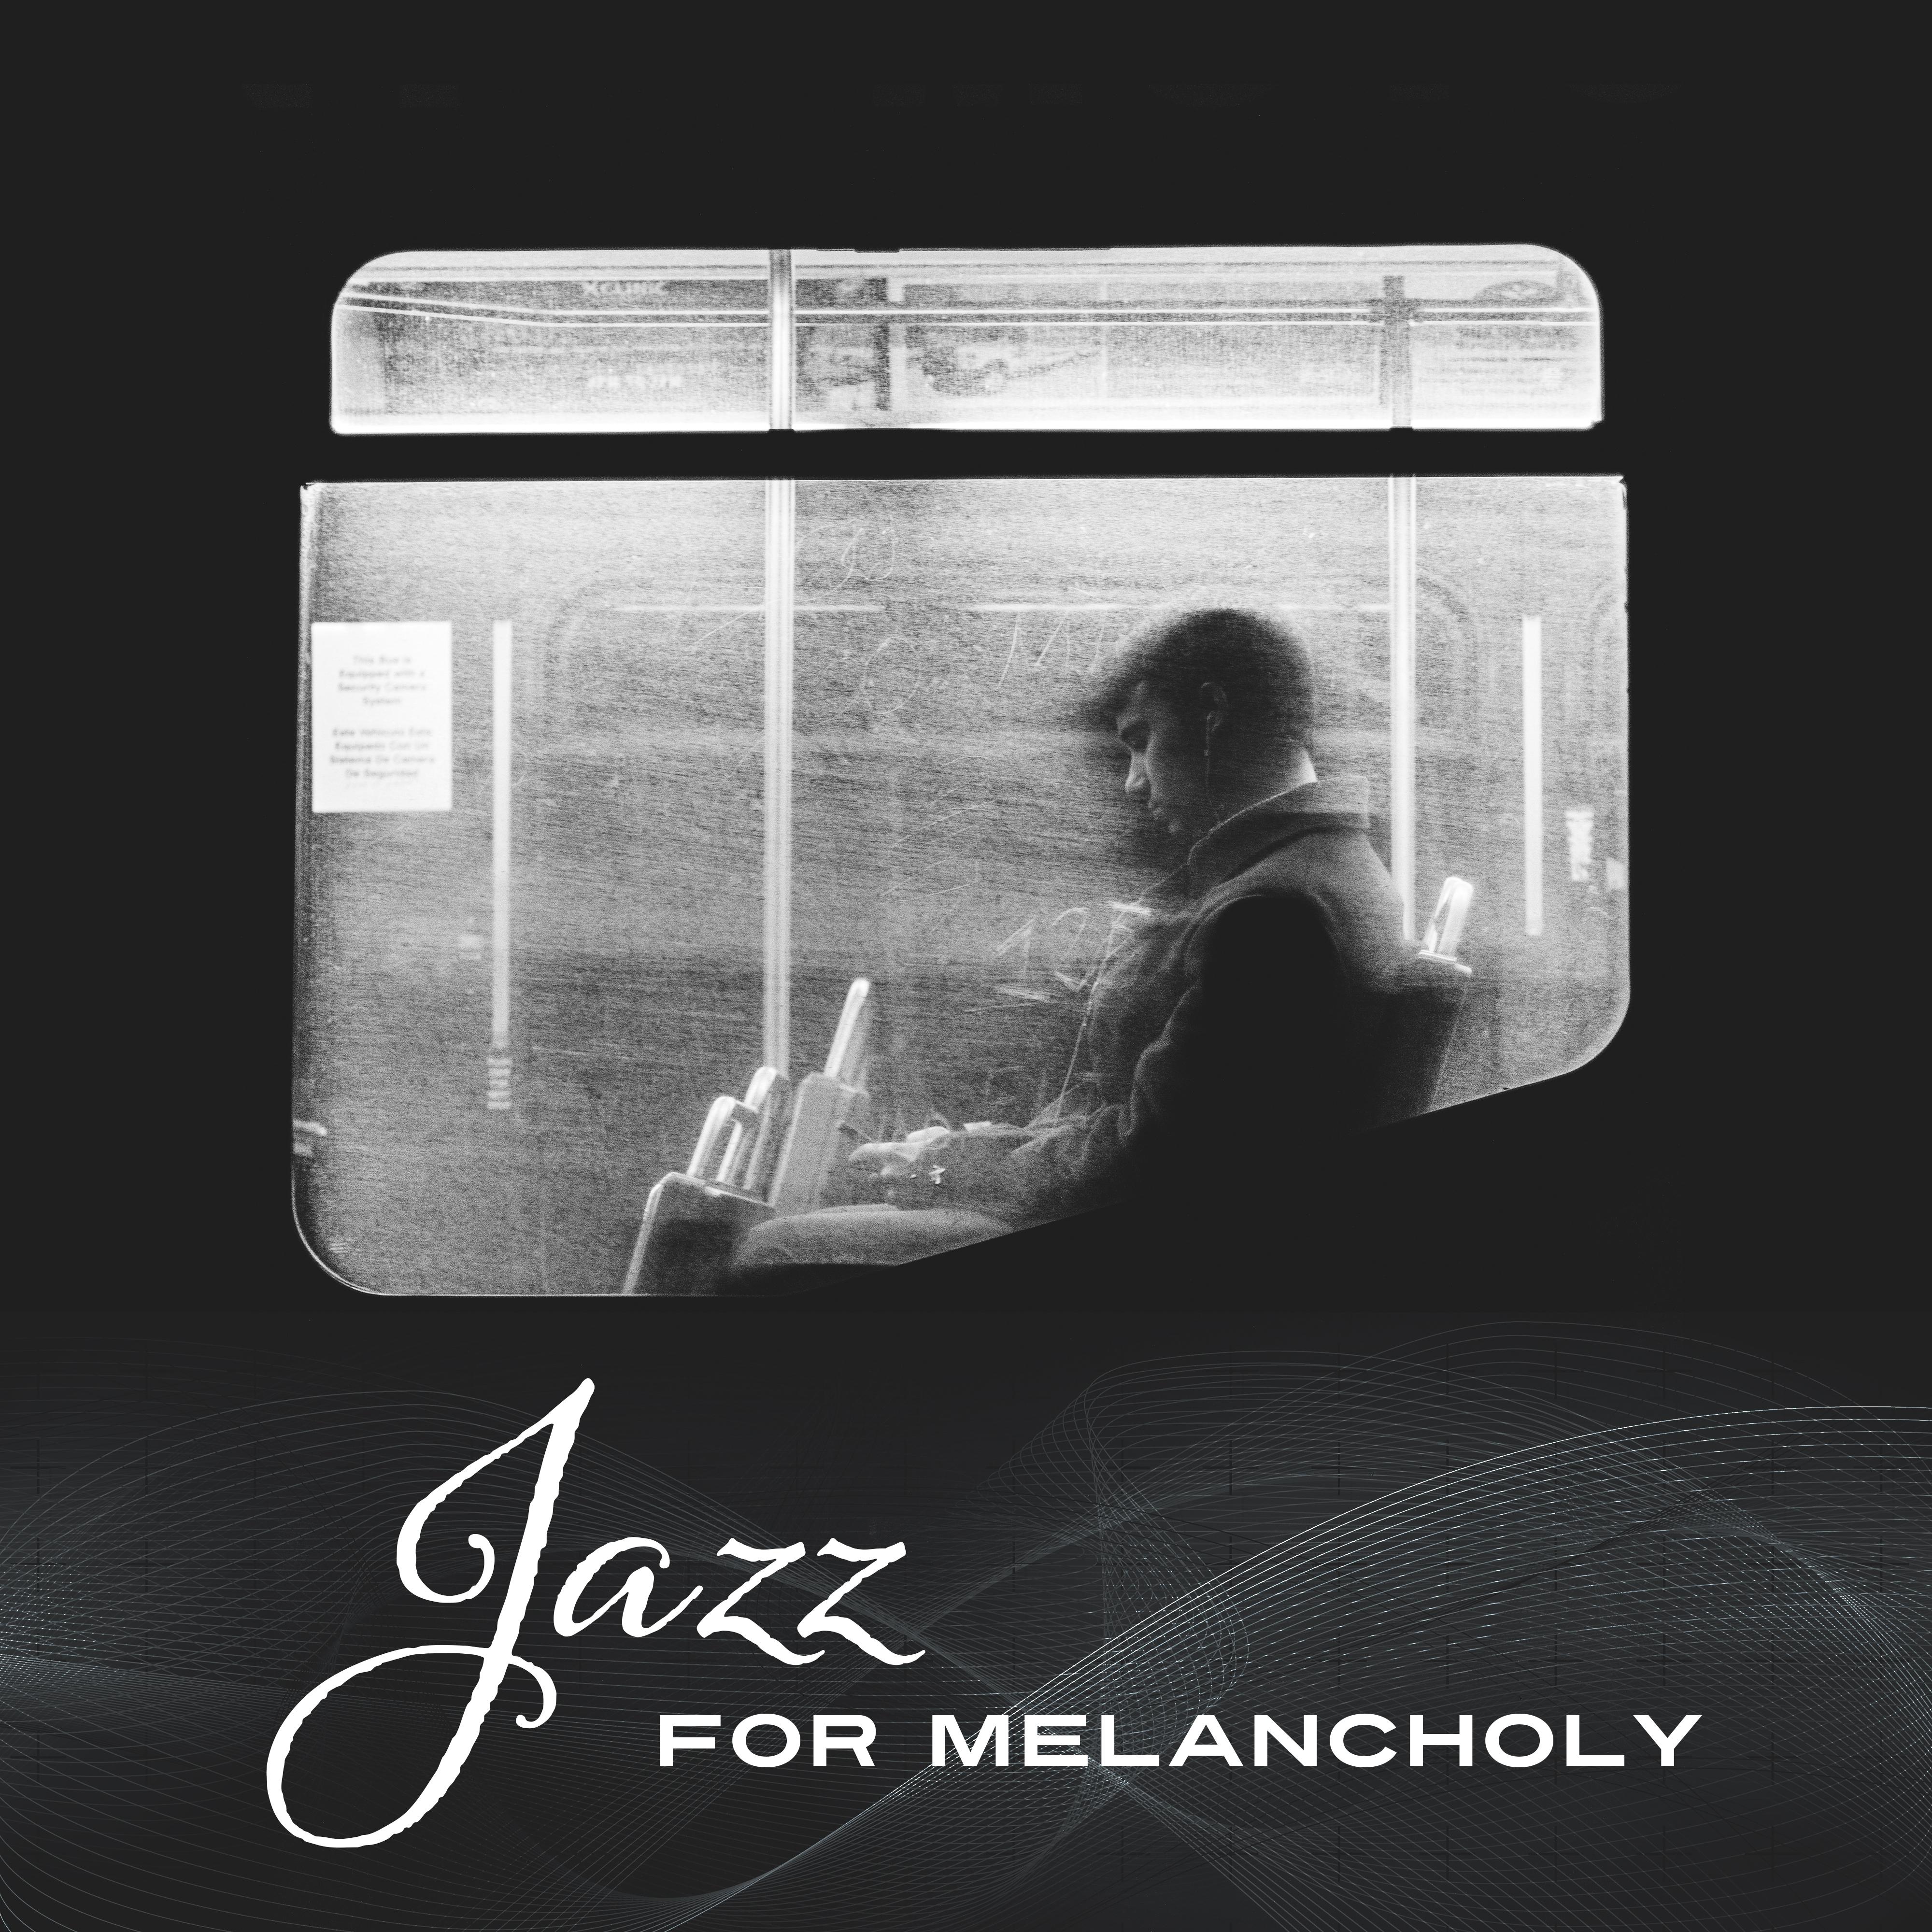 Mellow Jazz